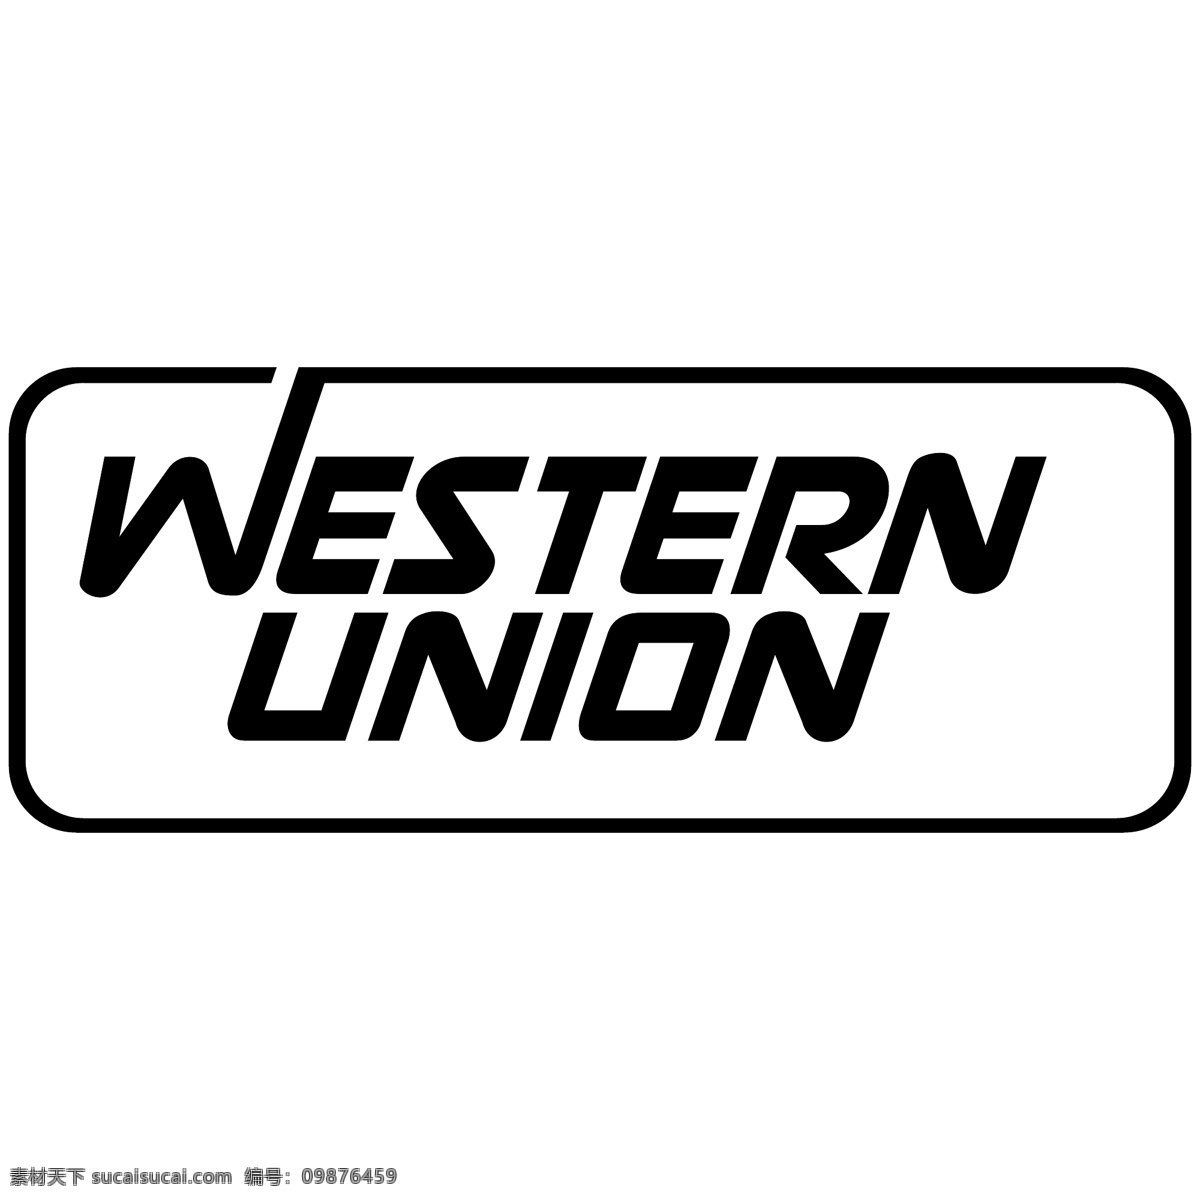 西部 联盟 自由 西方 标志 标识 psd源文件 logo设计